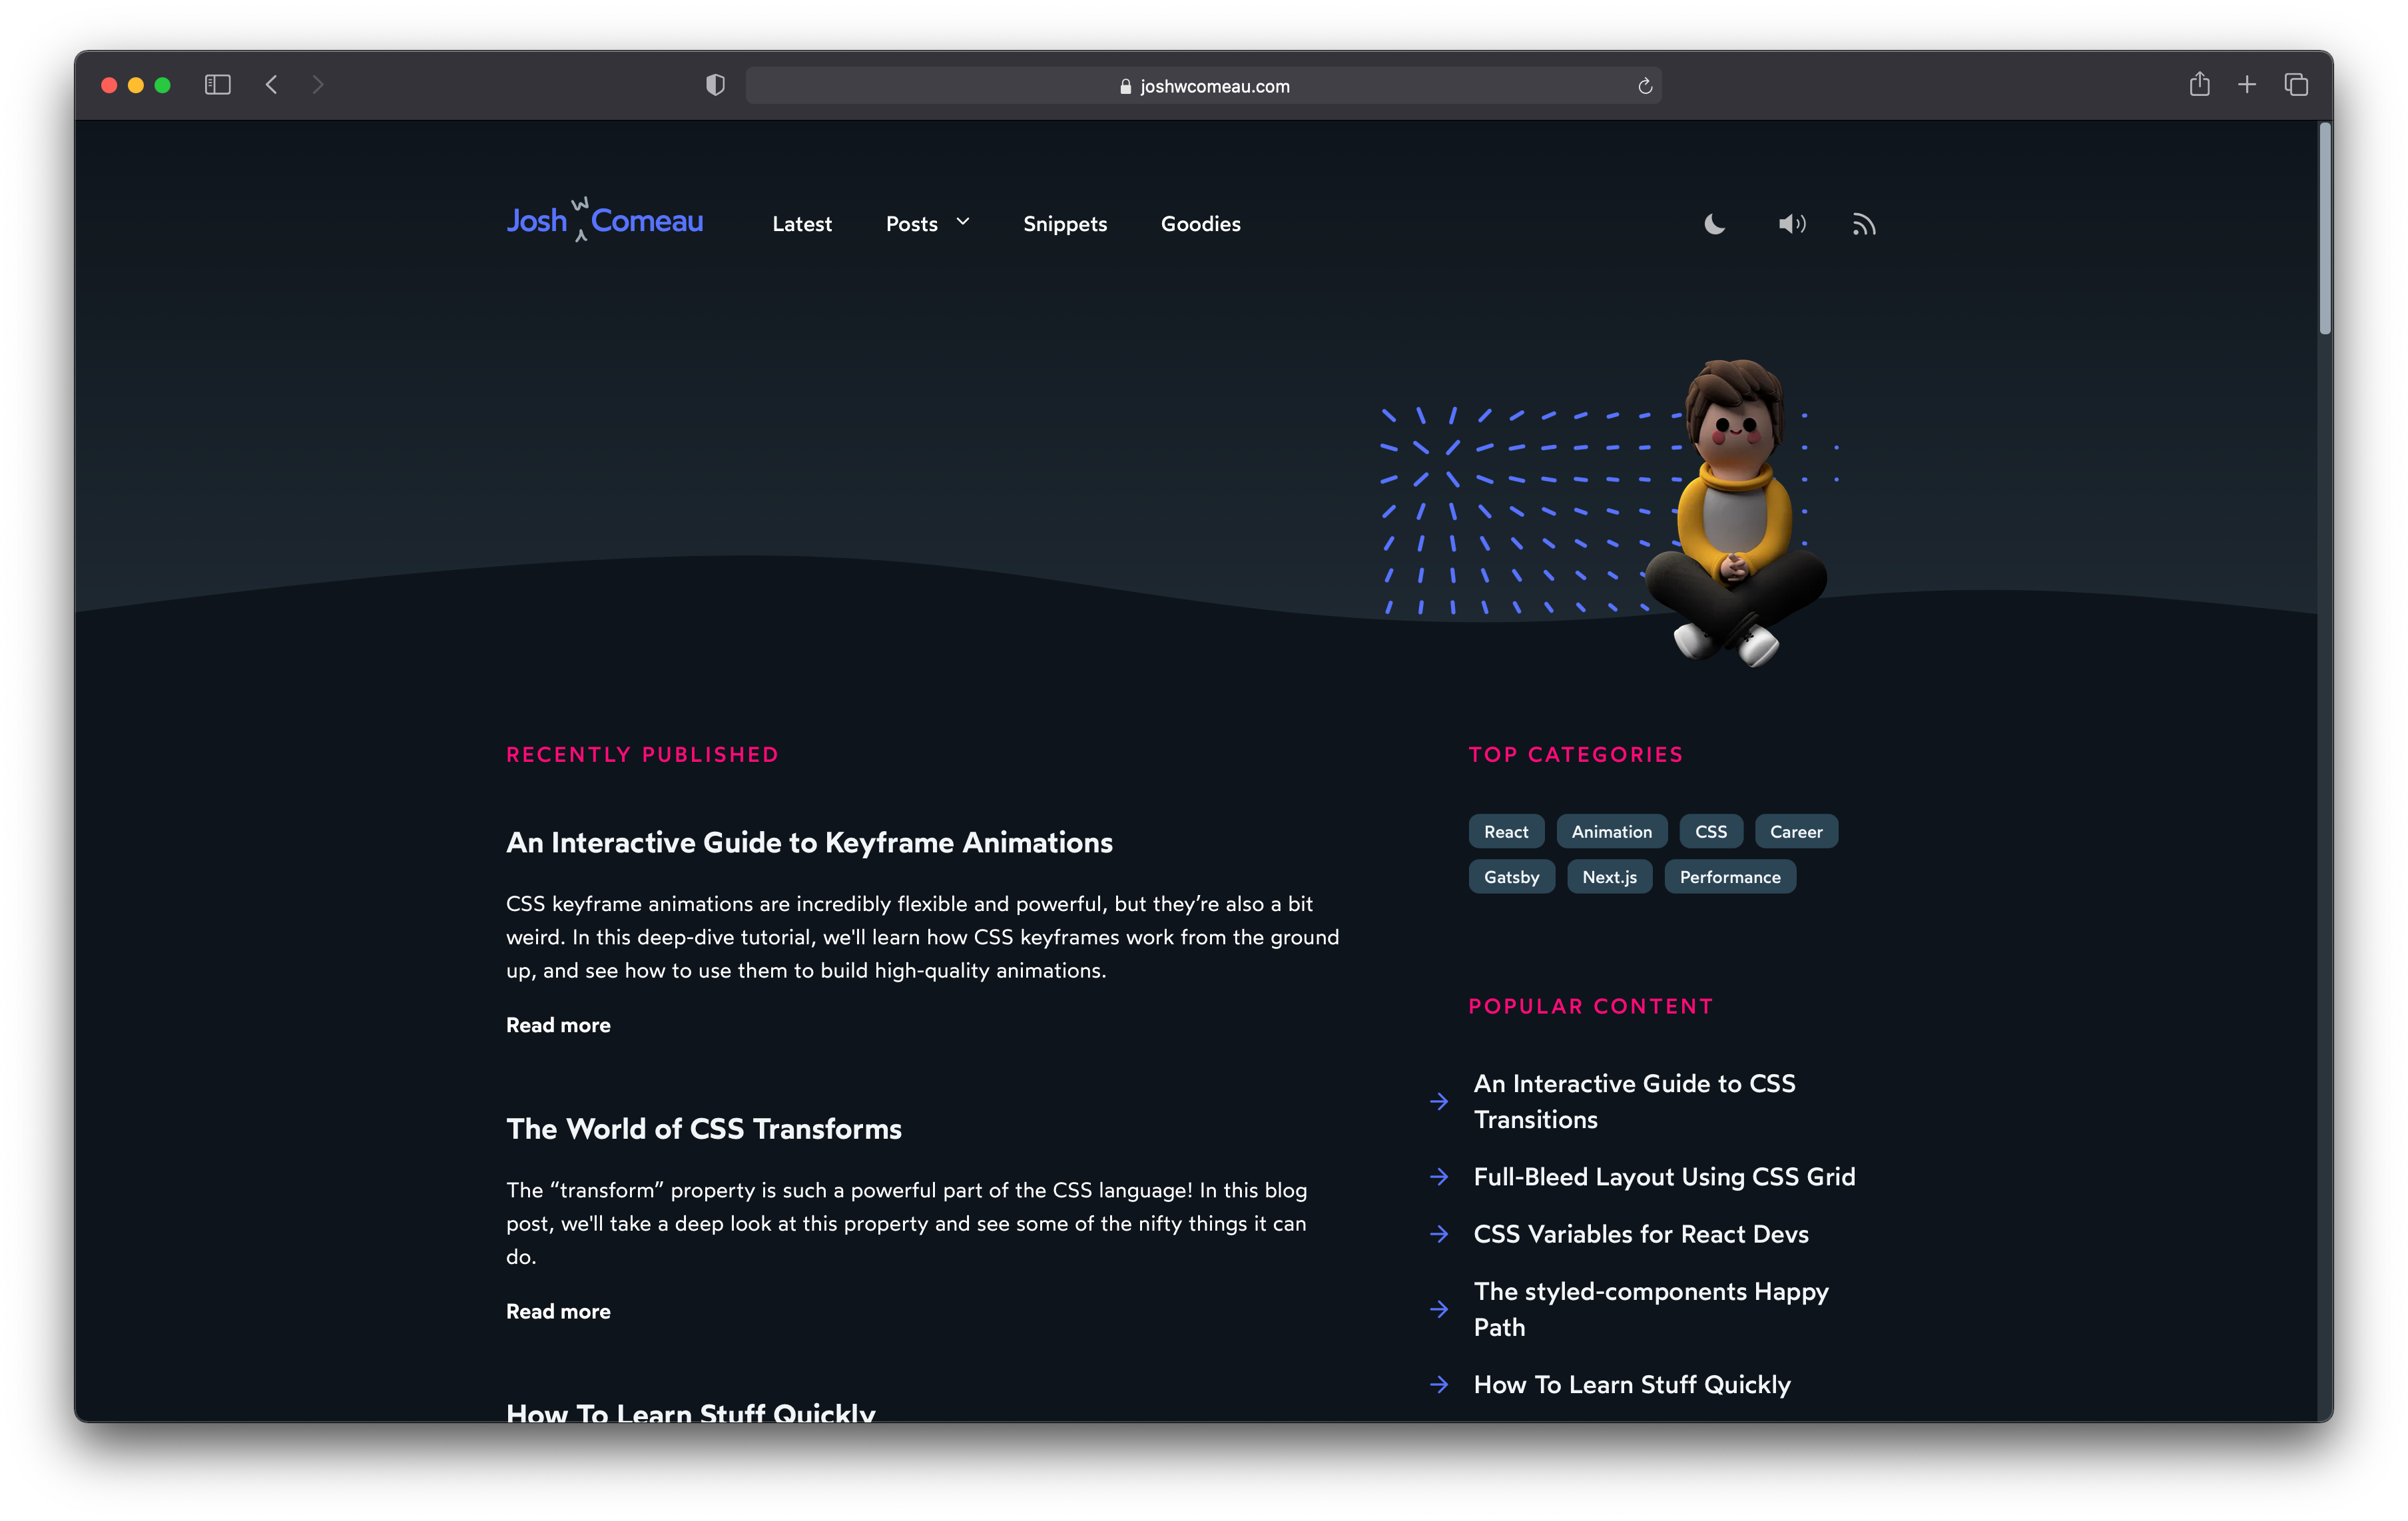 A screenshot of joshwcomeau.com website